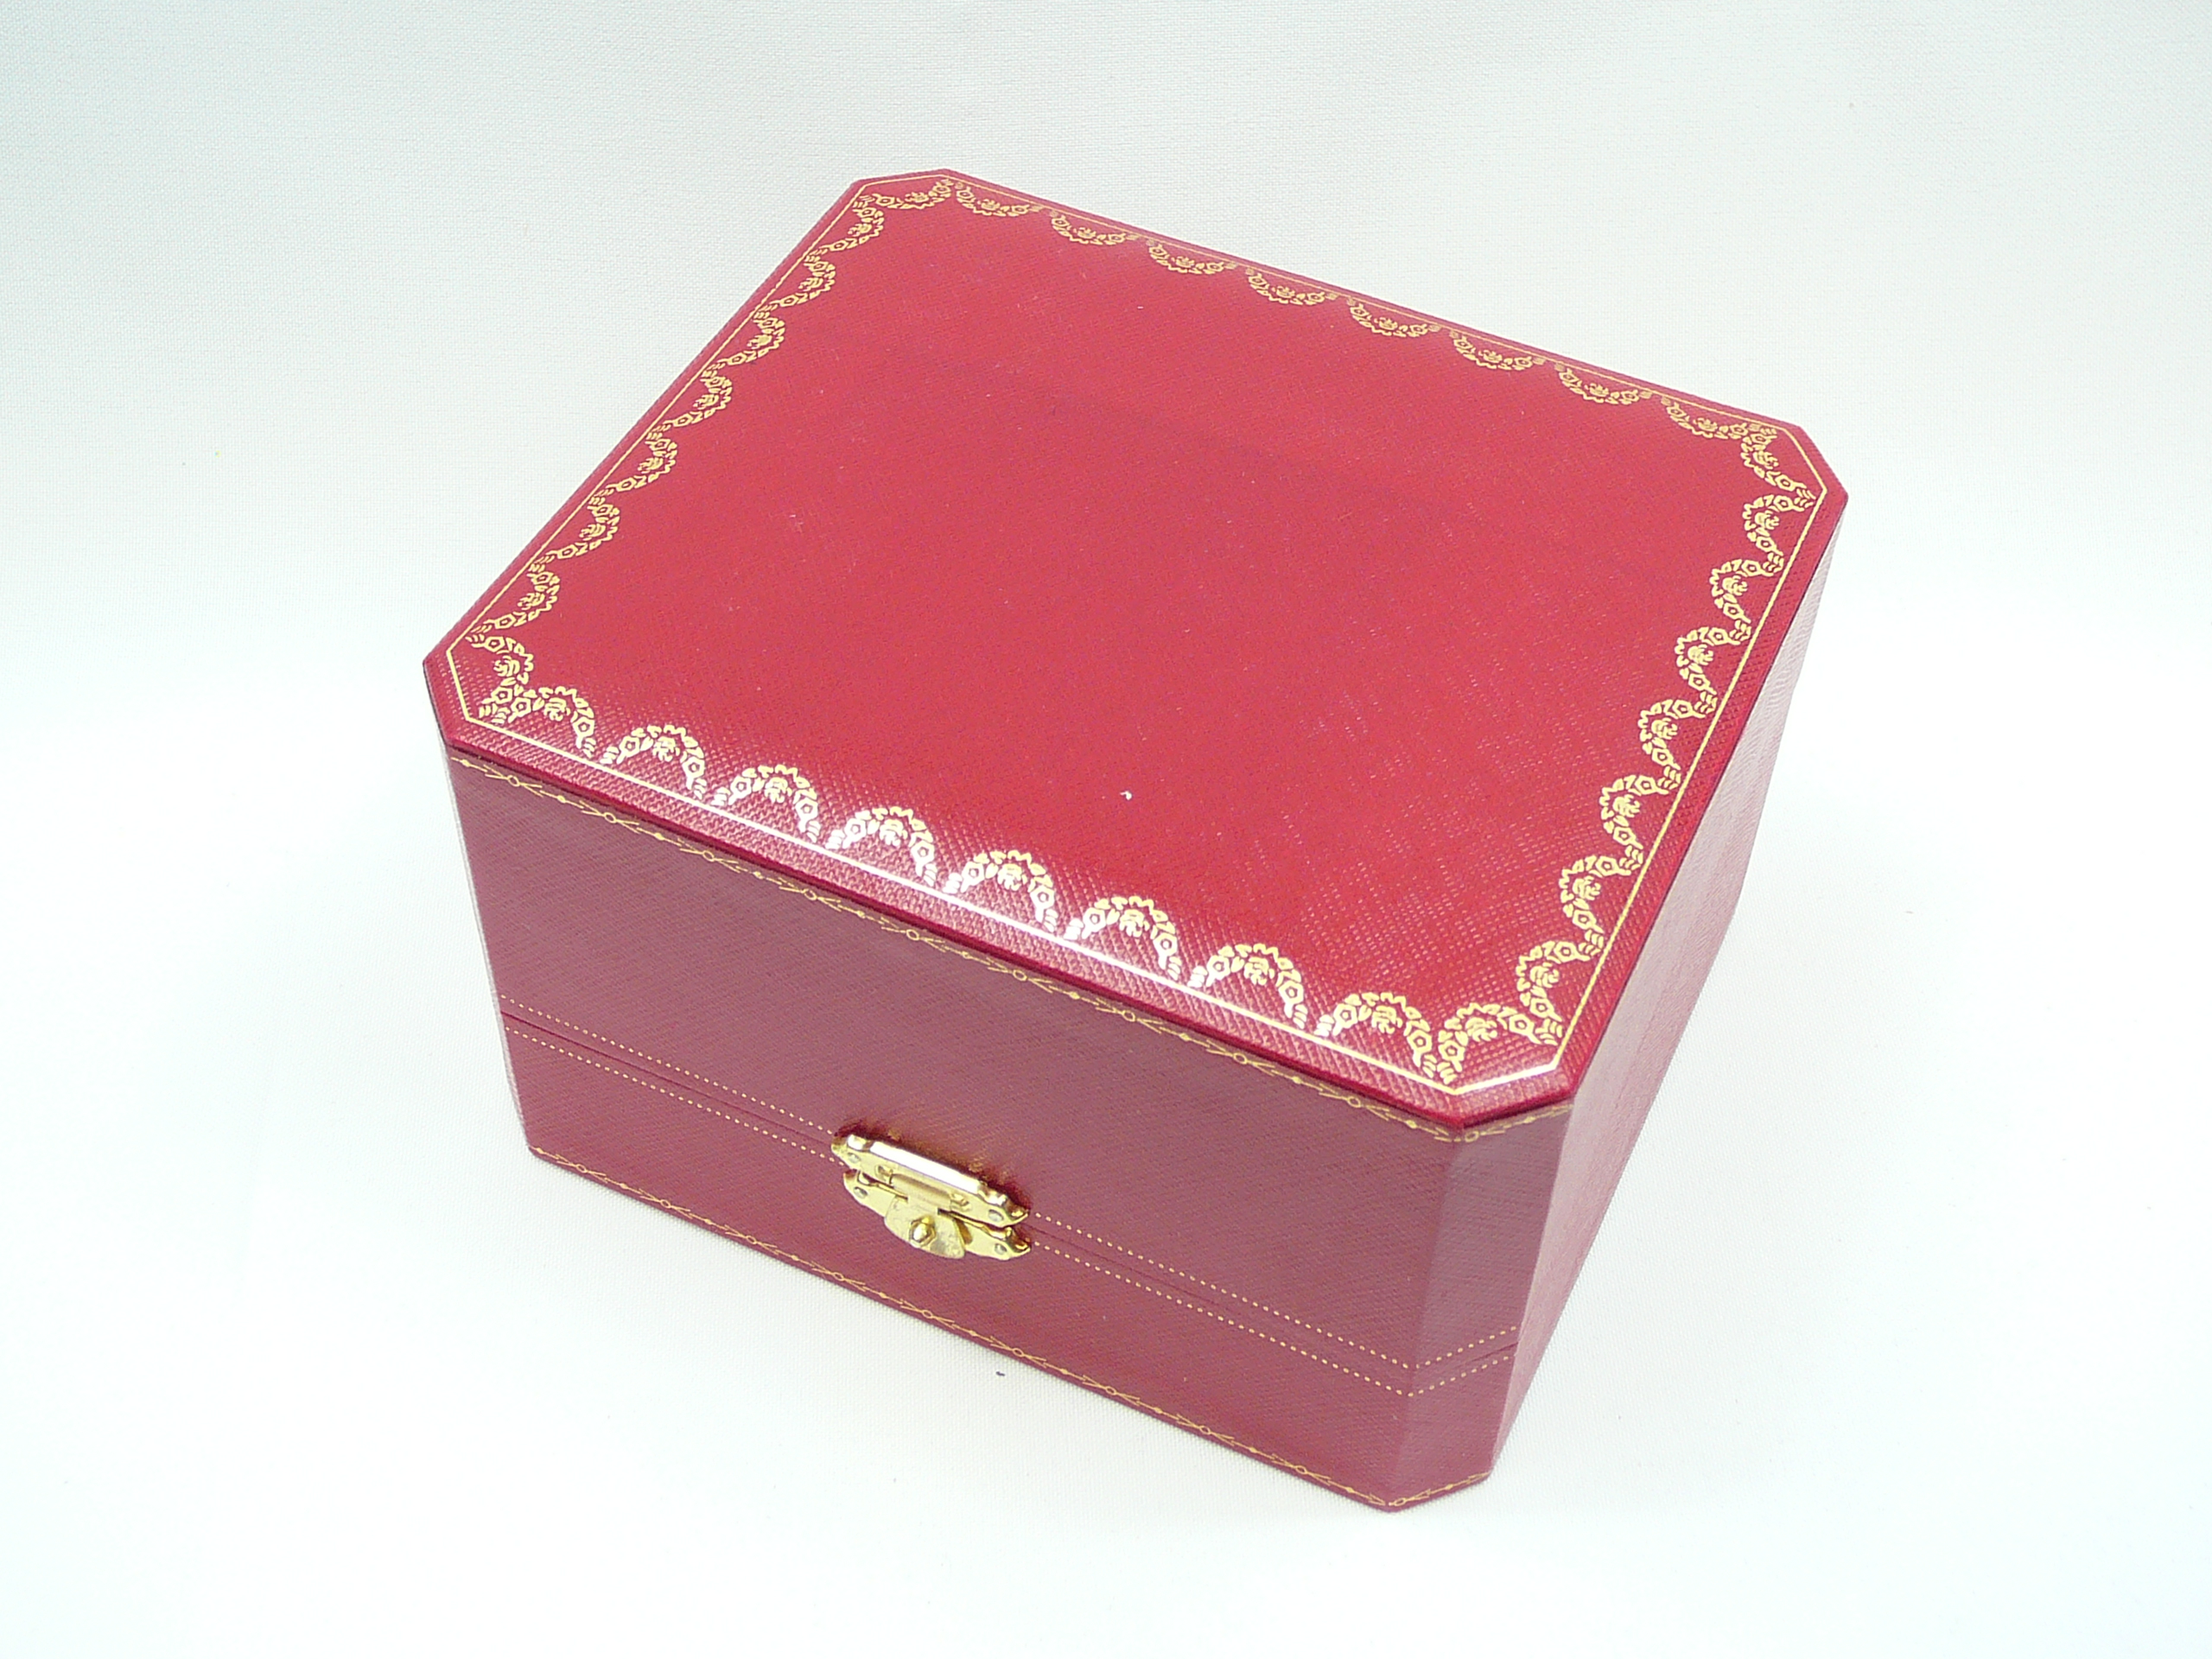 Cartier watch box